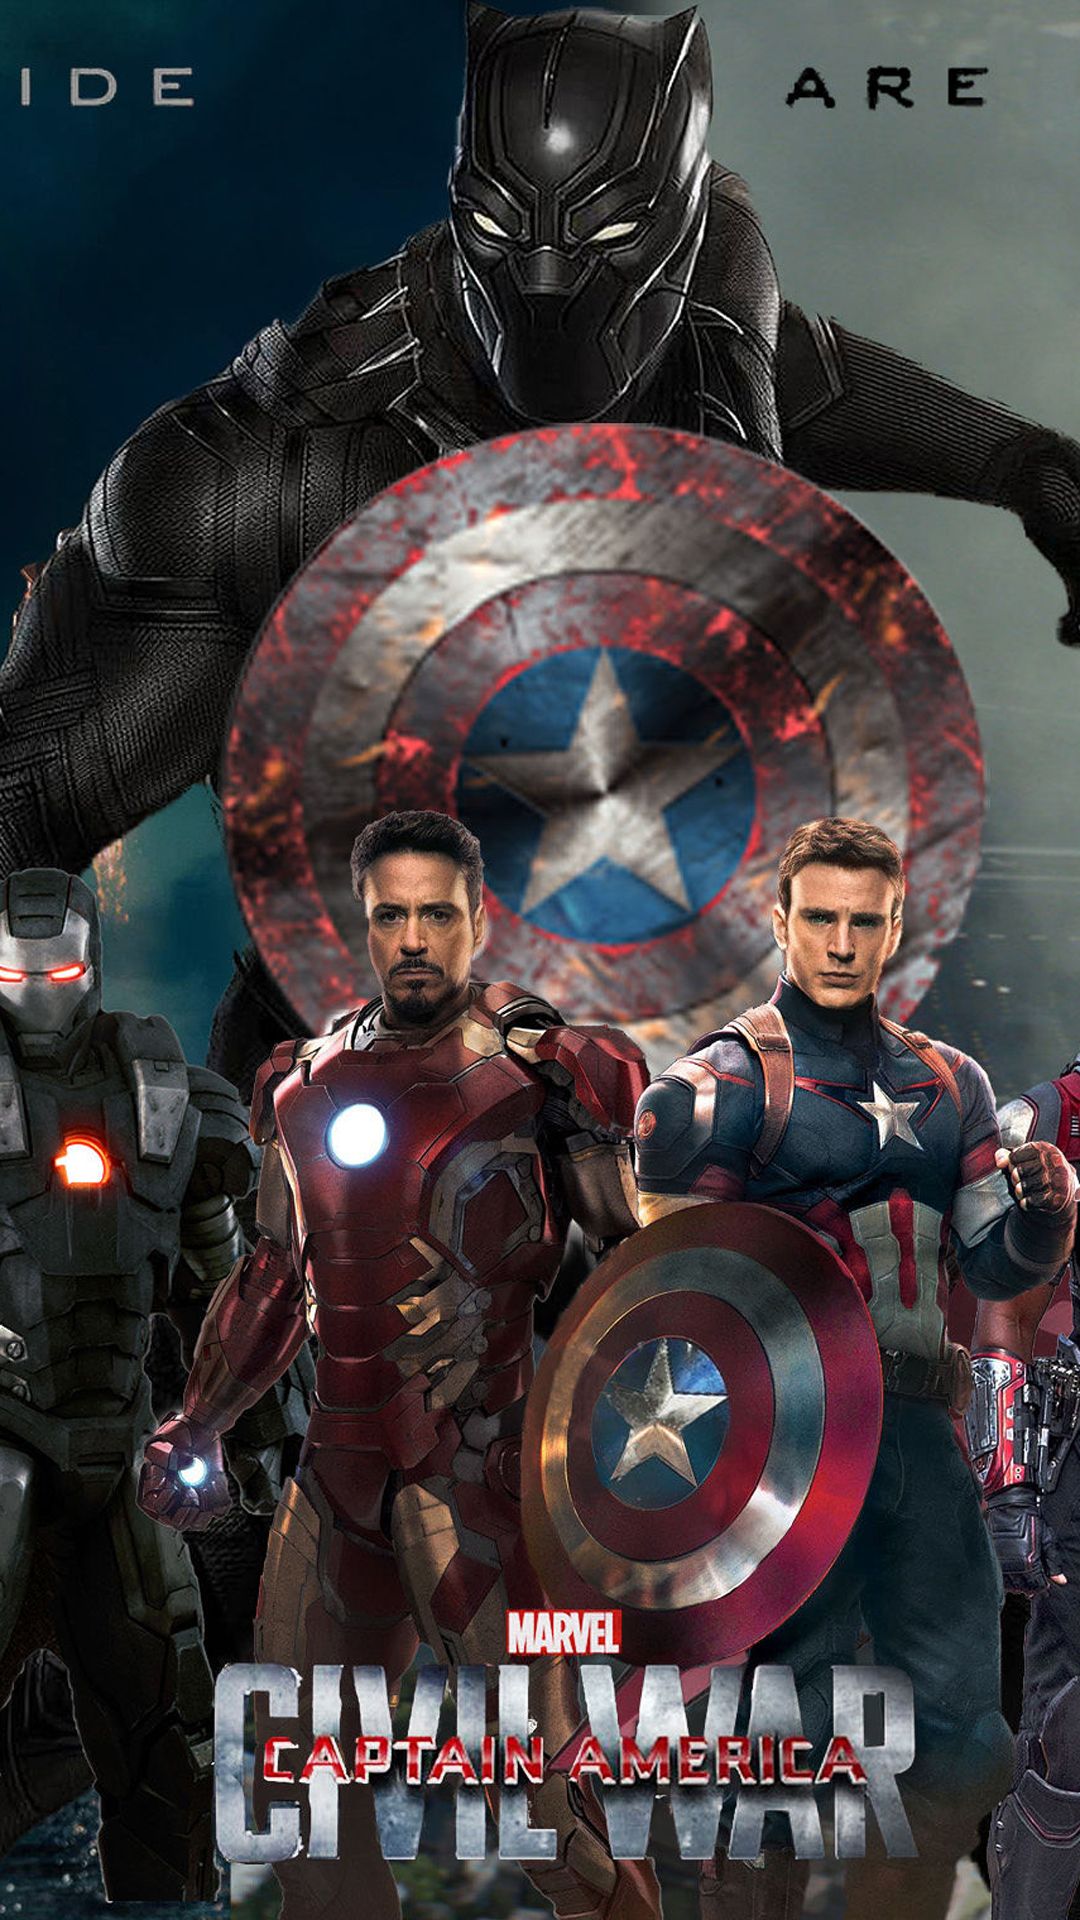 Captain America iPhone Image